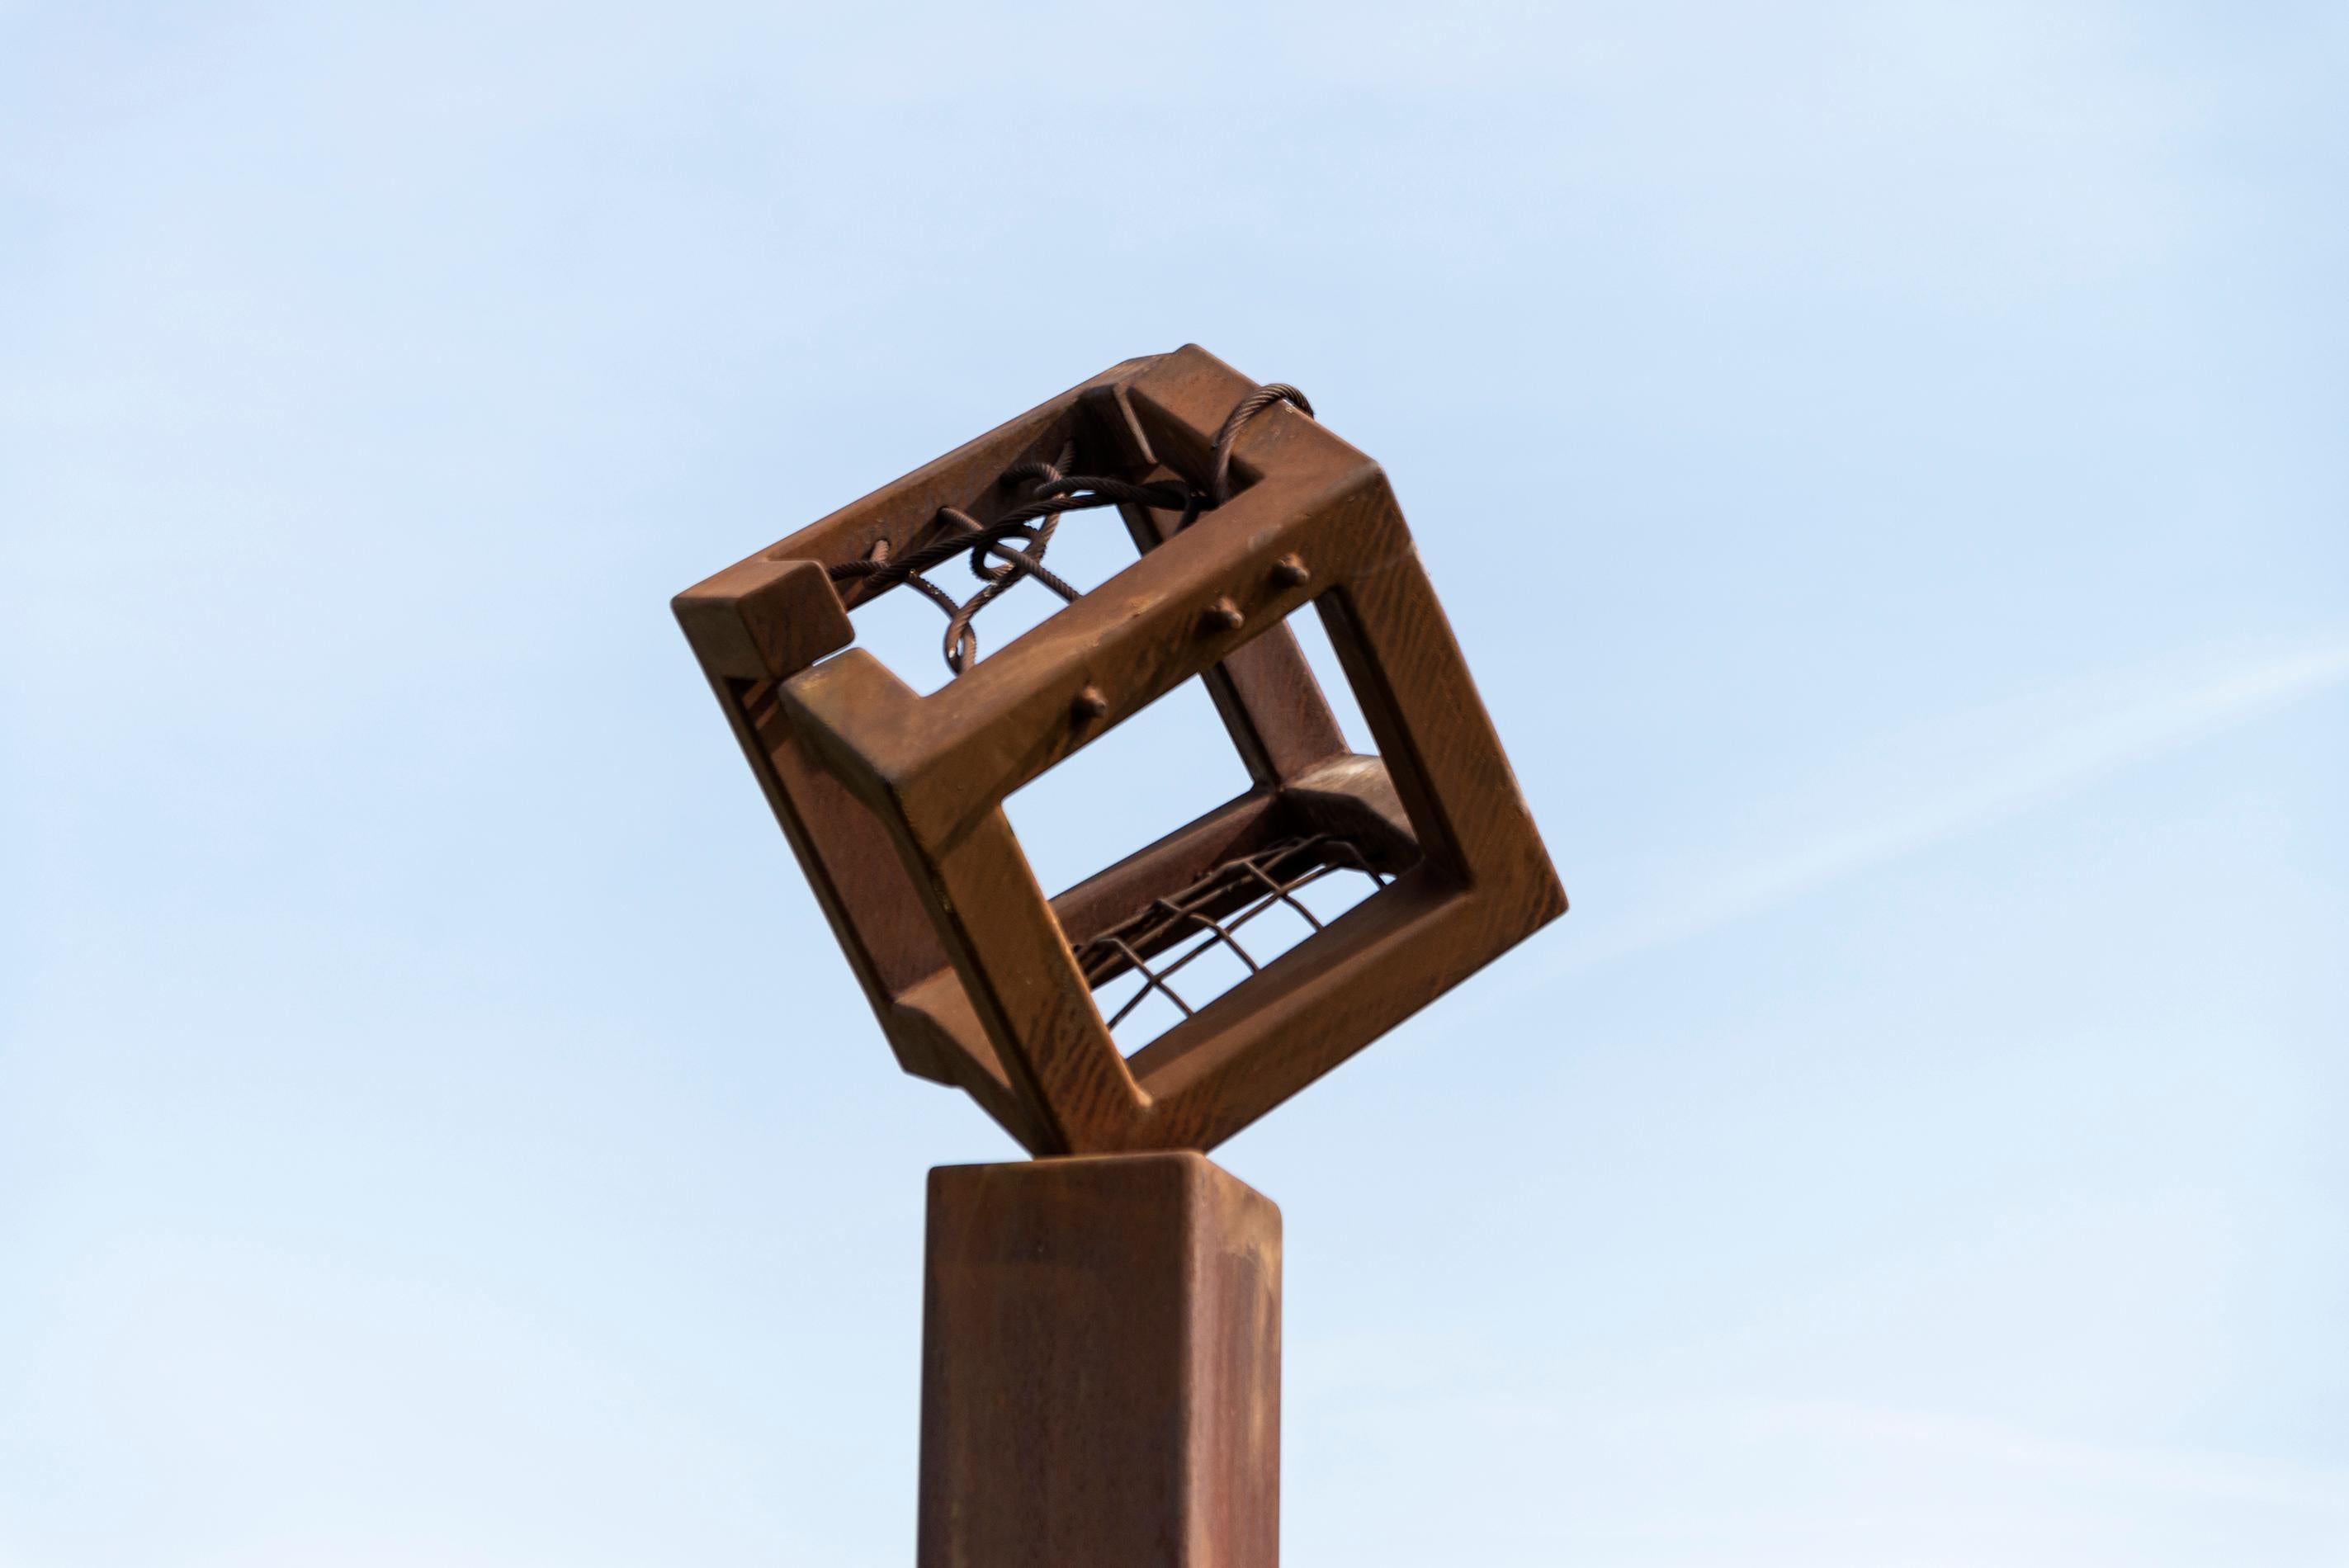 L'artiste québécois Claude Millette crée des sculptures uniques et fascinantes depuis plus de quatre décennies. Cette pièce d'extérieur en acier corten présente un cadre ouvert en forme de cube (